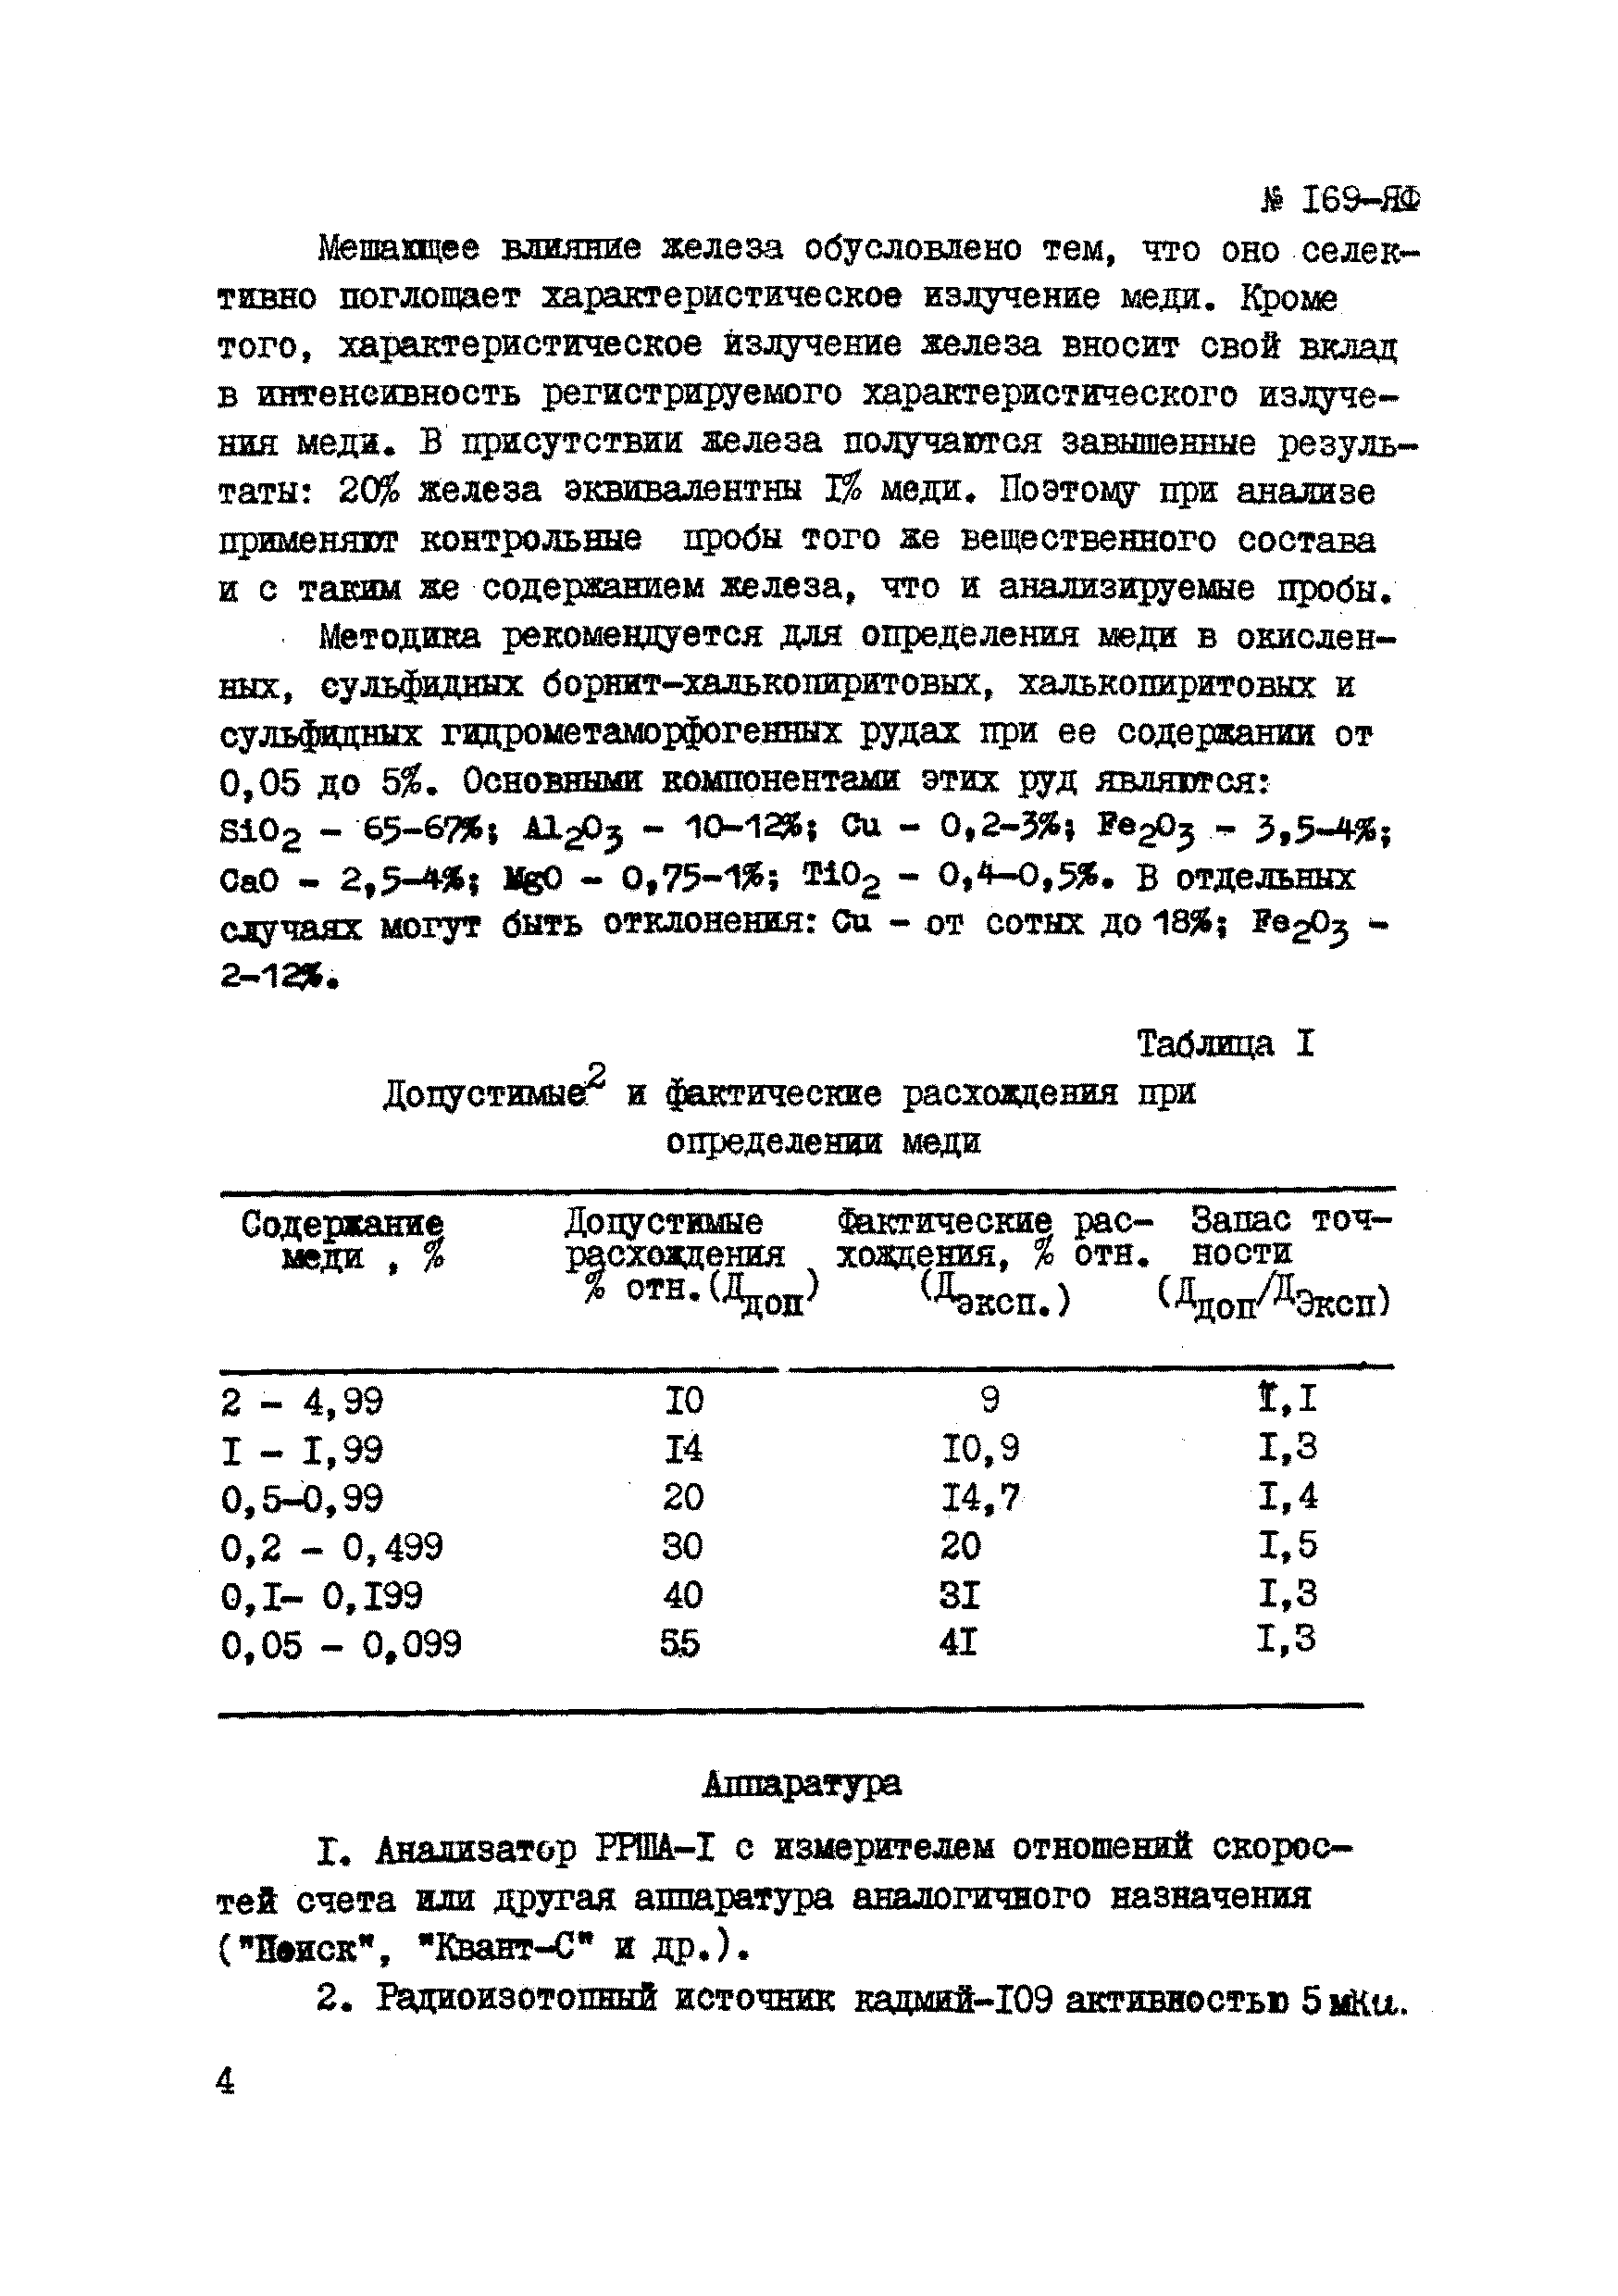 Инструкция НСАМ 169-ЯФ